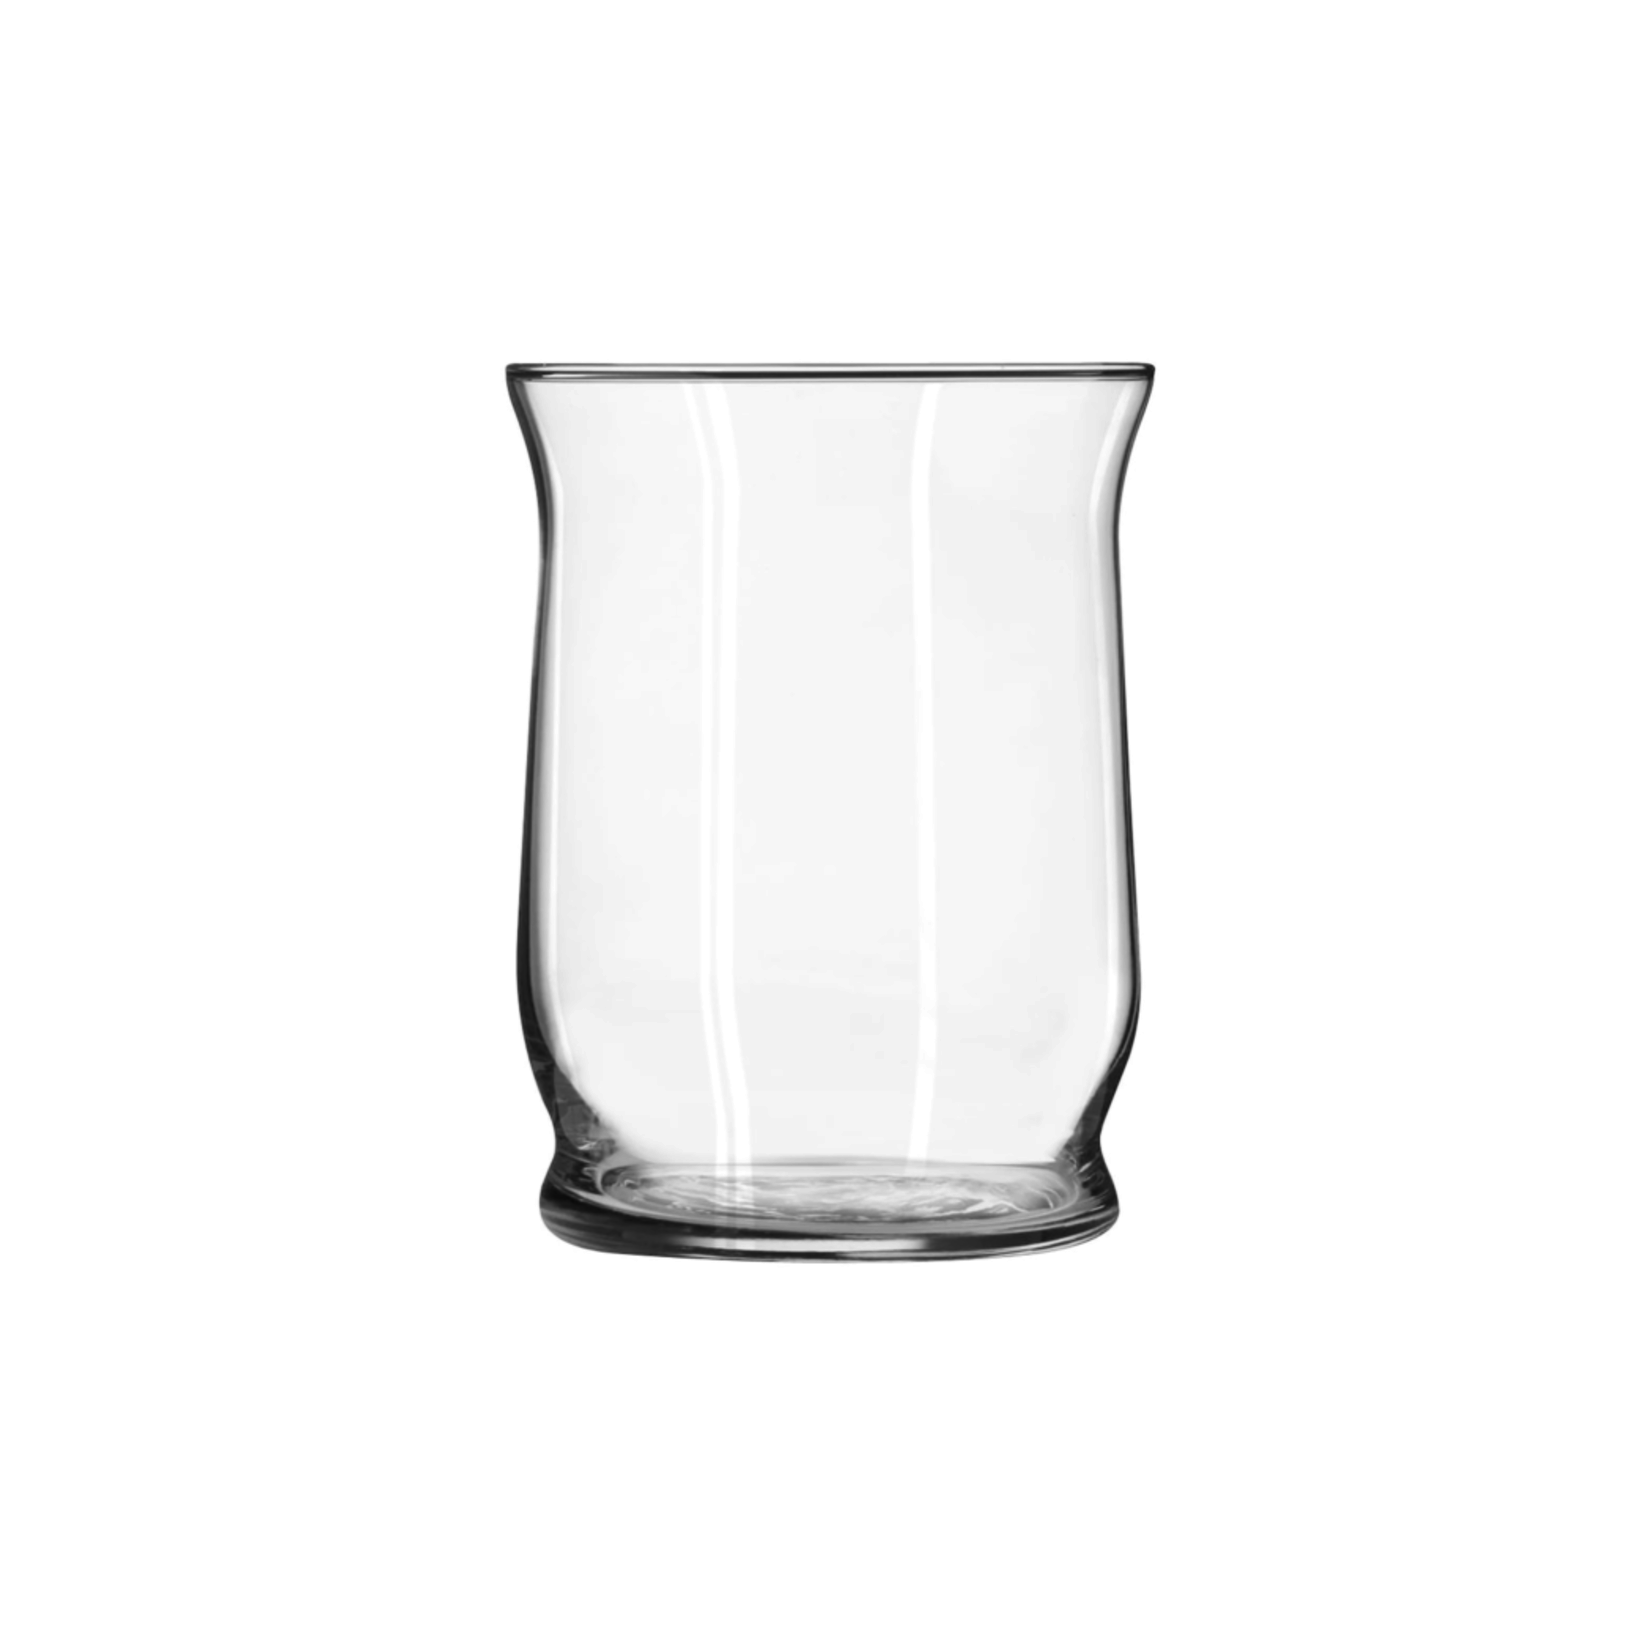 4.25”H x 3.5” ADORN GLASS VASE/VOTIVE